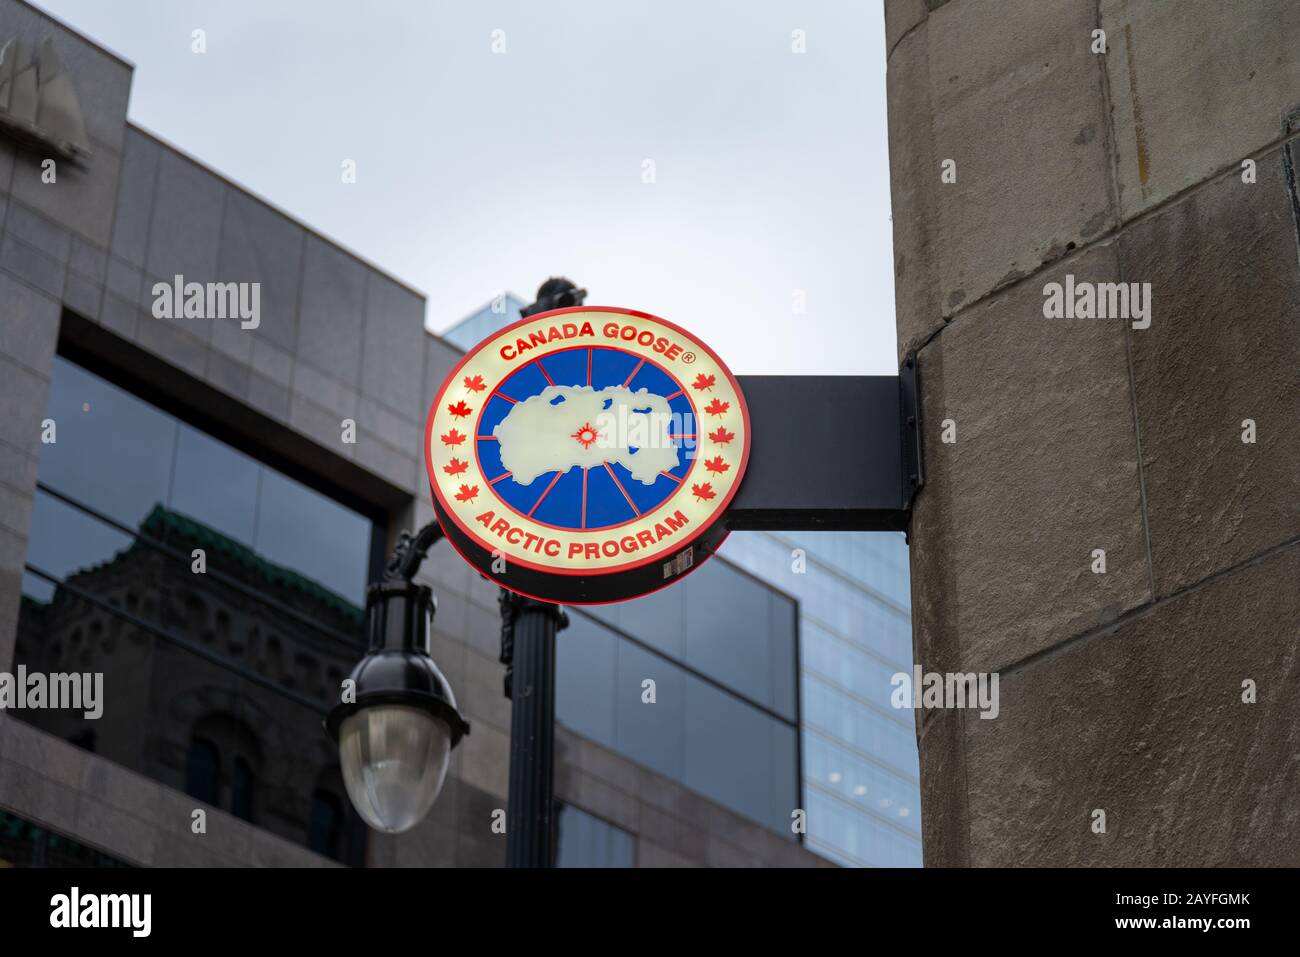 Canada goose logo Banque de photographies et d'images à haute résolution -  Alamy